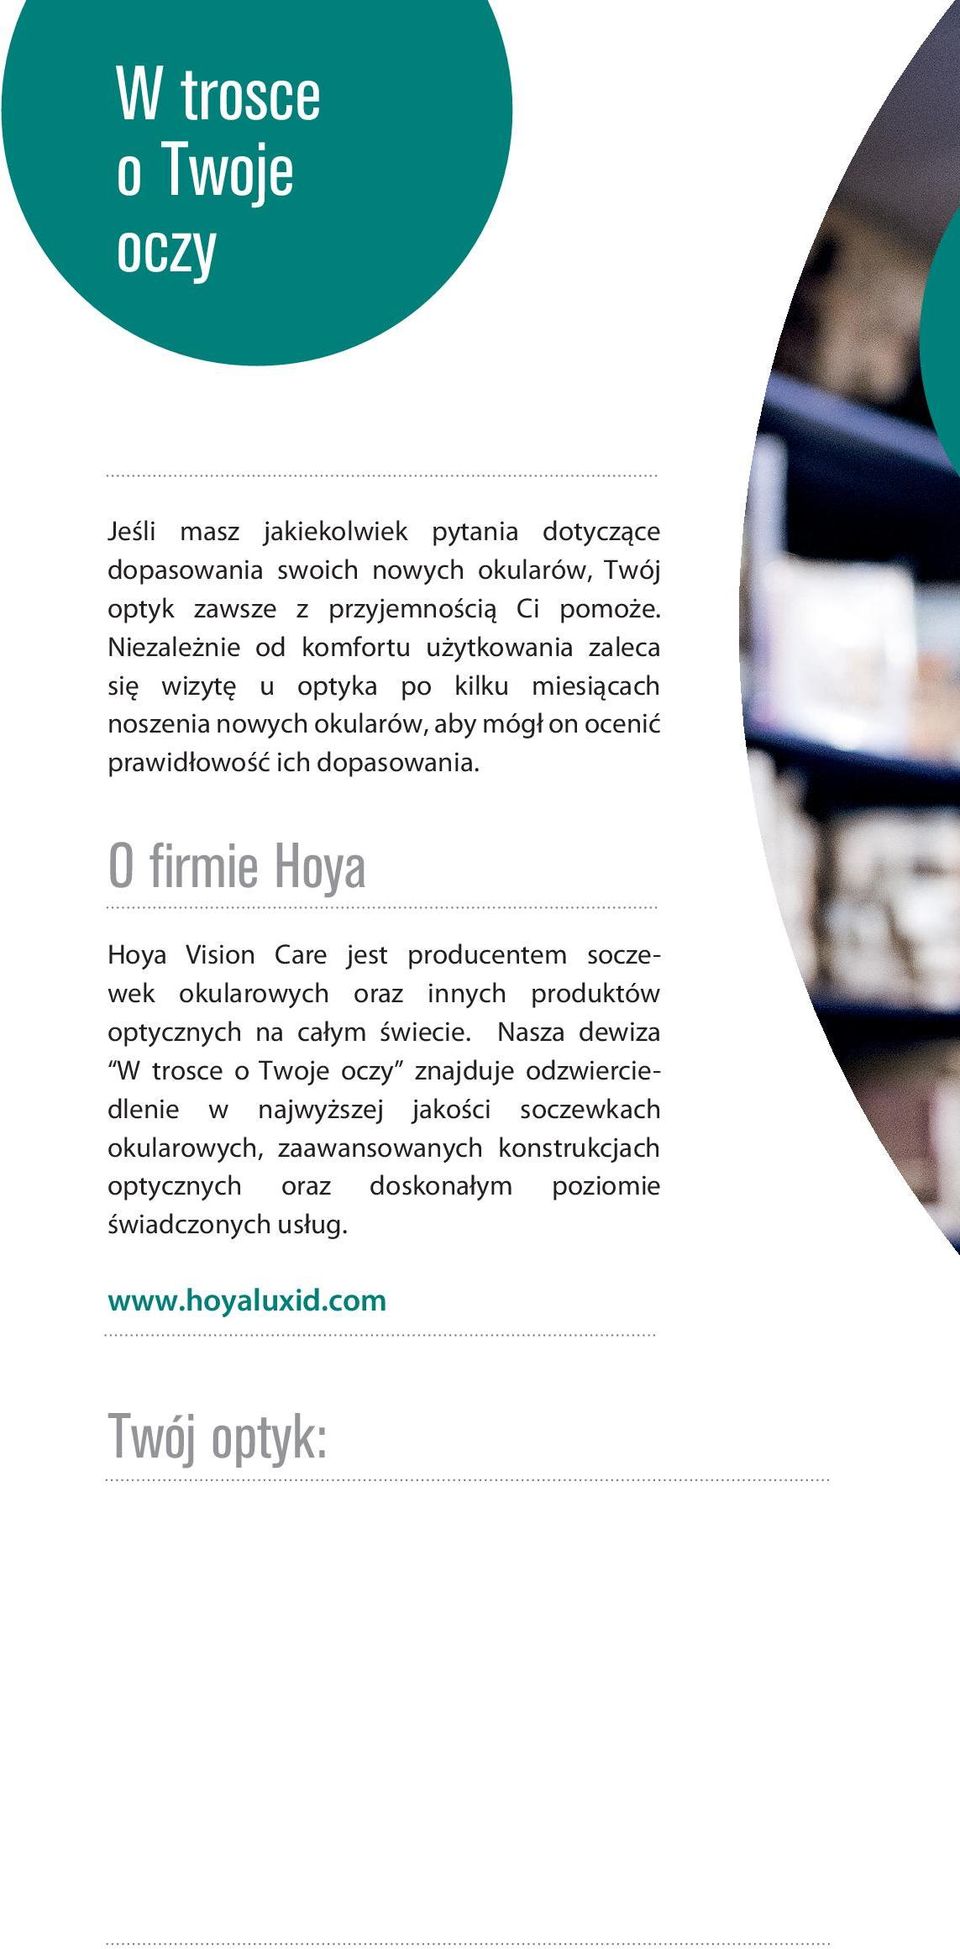 O ﬁrmie Hoya Hoya Vision Care jest producentem soczewek okularowych oraz innych produktów optycznych na całym świecie.